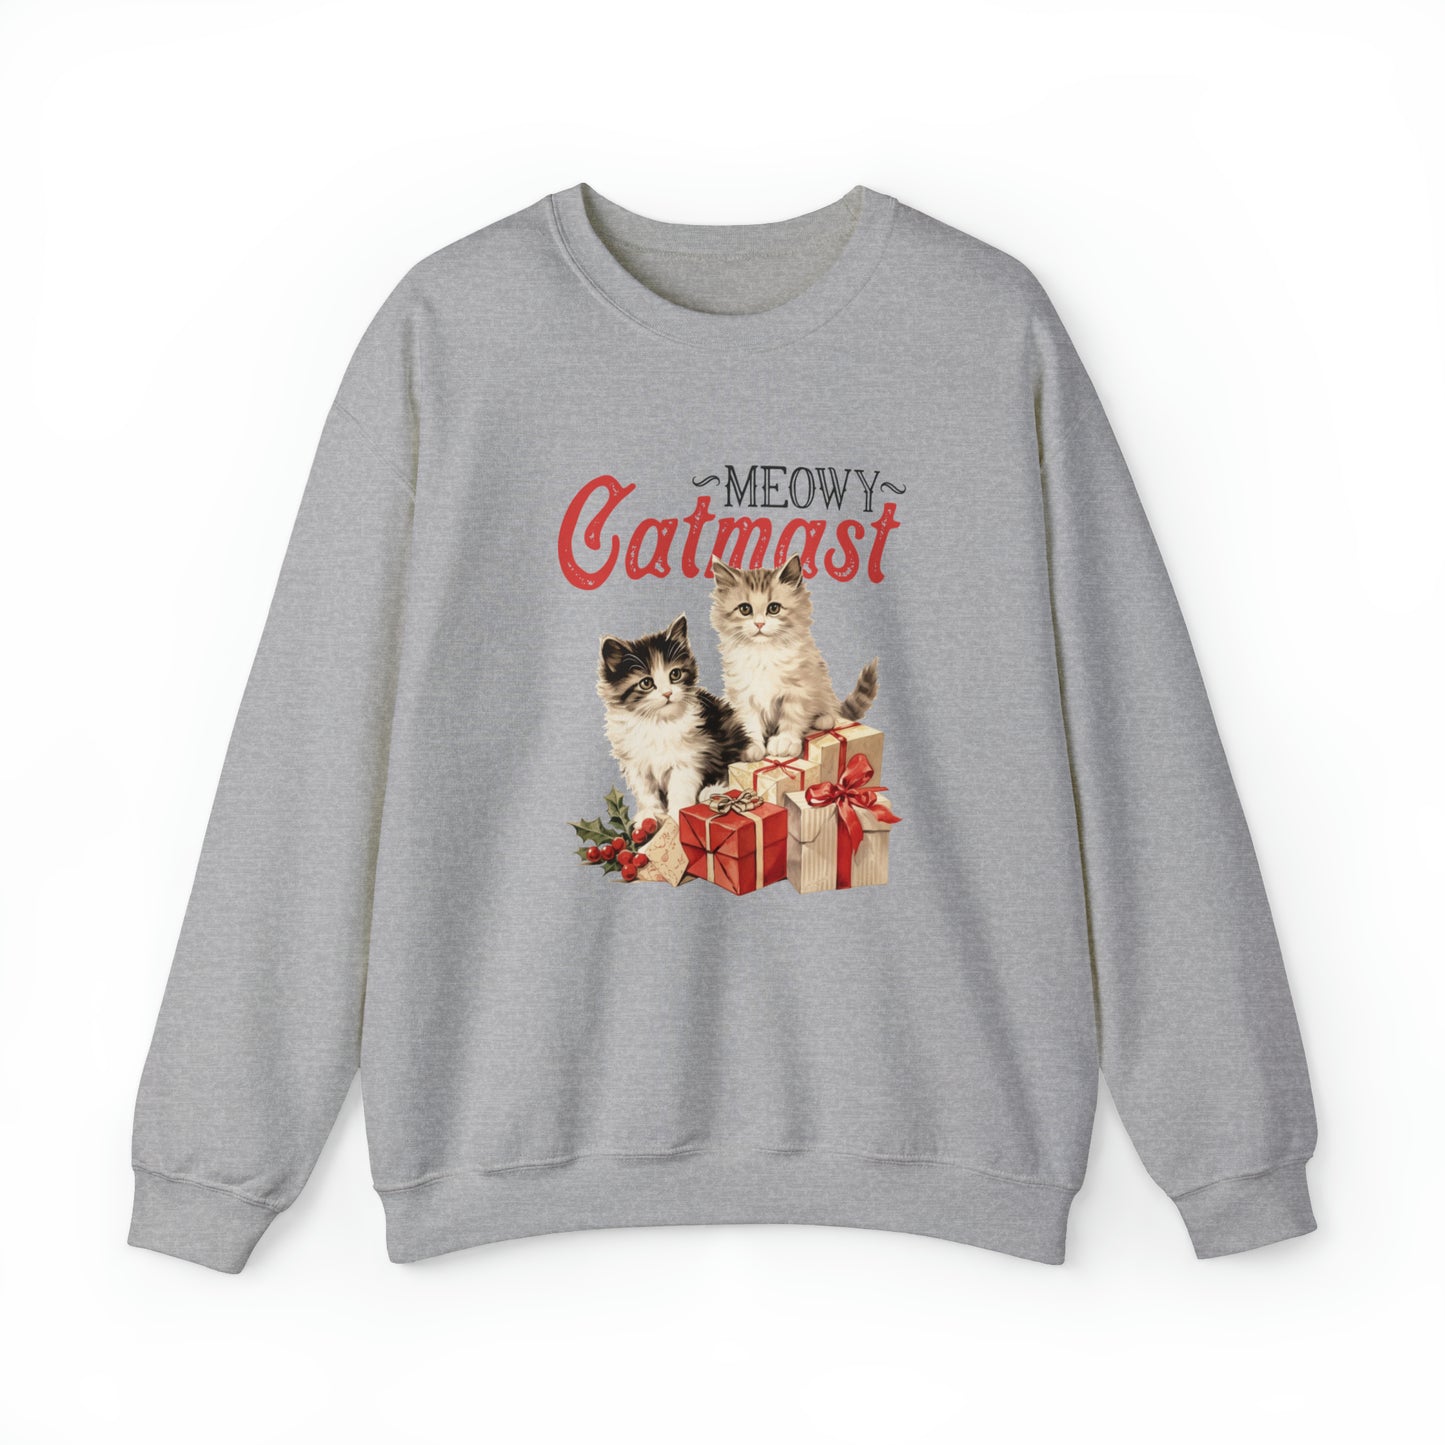 Moewy Catmas Crewneck Sweatshirt | Christmas Favorite Sweatshirt | Unisex Sizing